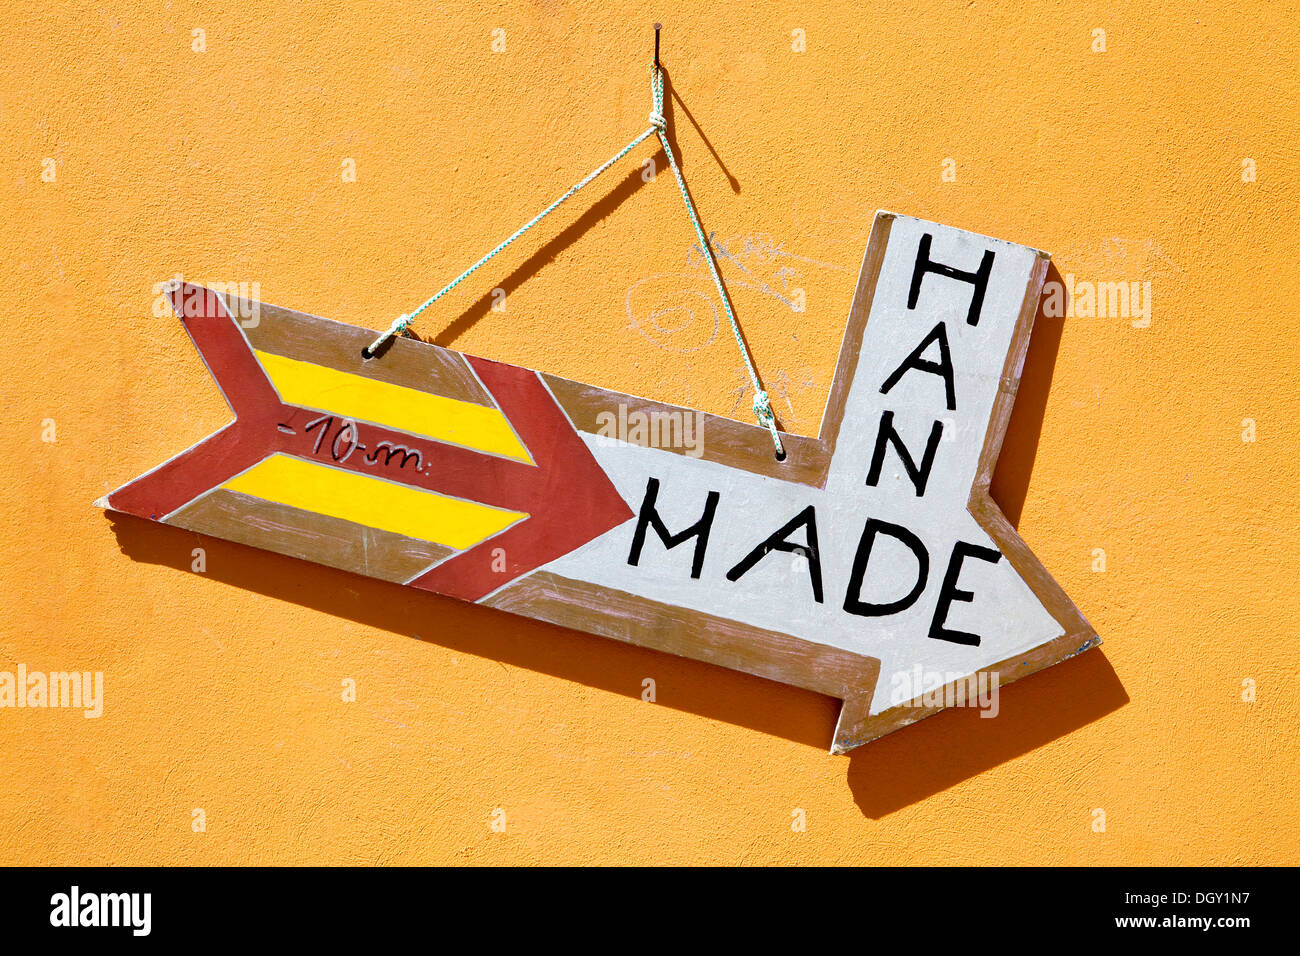 Zeichen "Hand Made" für ein Erinnerungsfoto zu speichern, Rovinj, Rovingo, Istrien, Kroatien, Europa, Rovinj, Kroatien Stockfoto